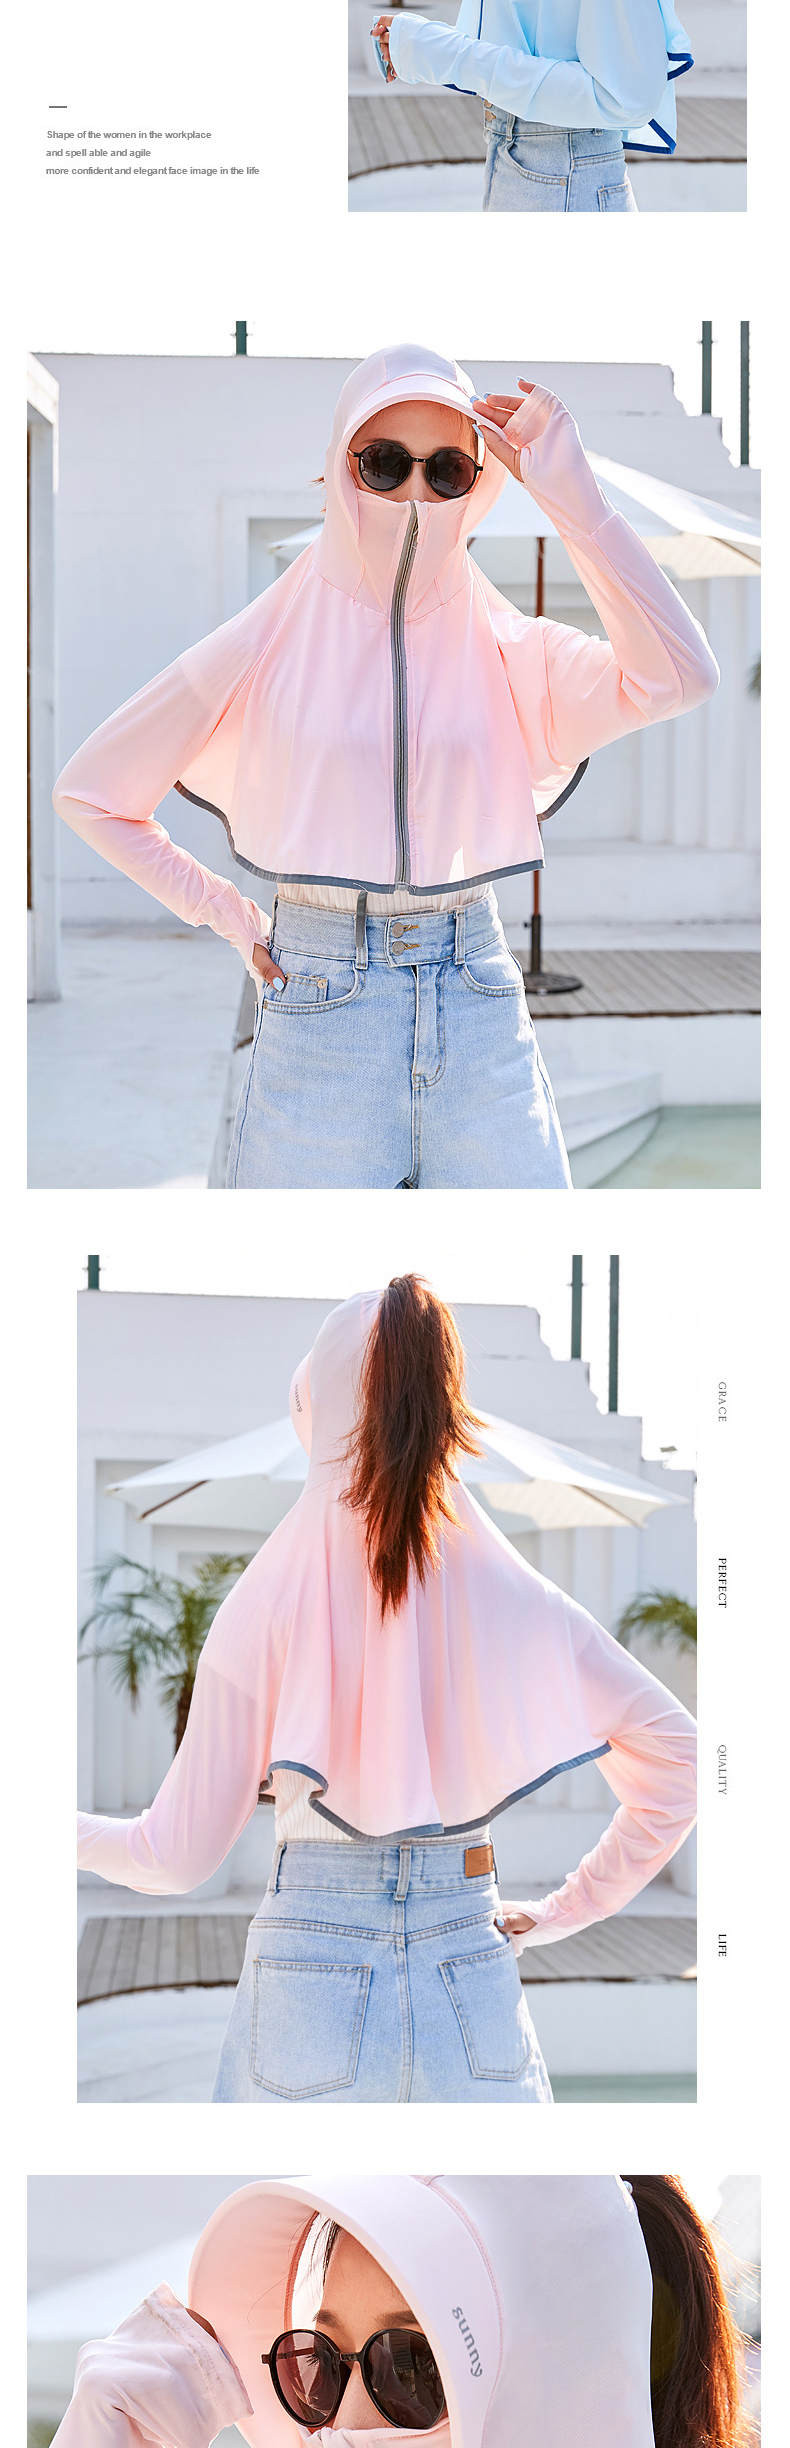 宝娜斯/BONAS 夏季新款防晒衣 女士百搭超薄款 户外防紫外线防晒服